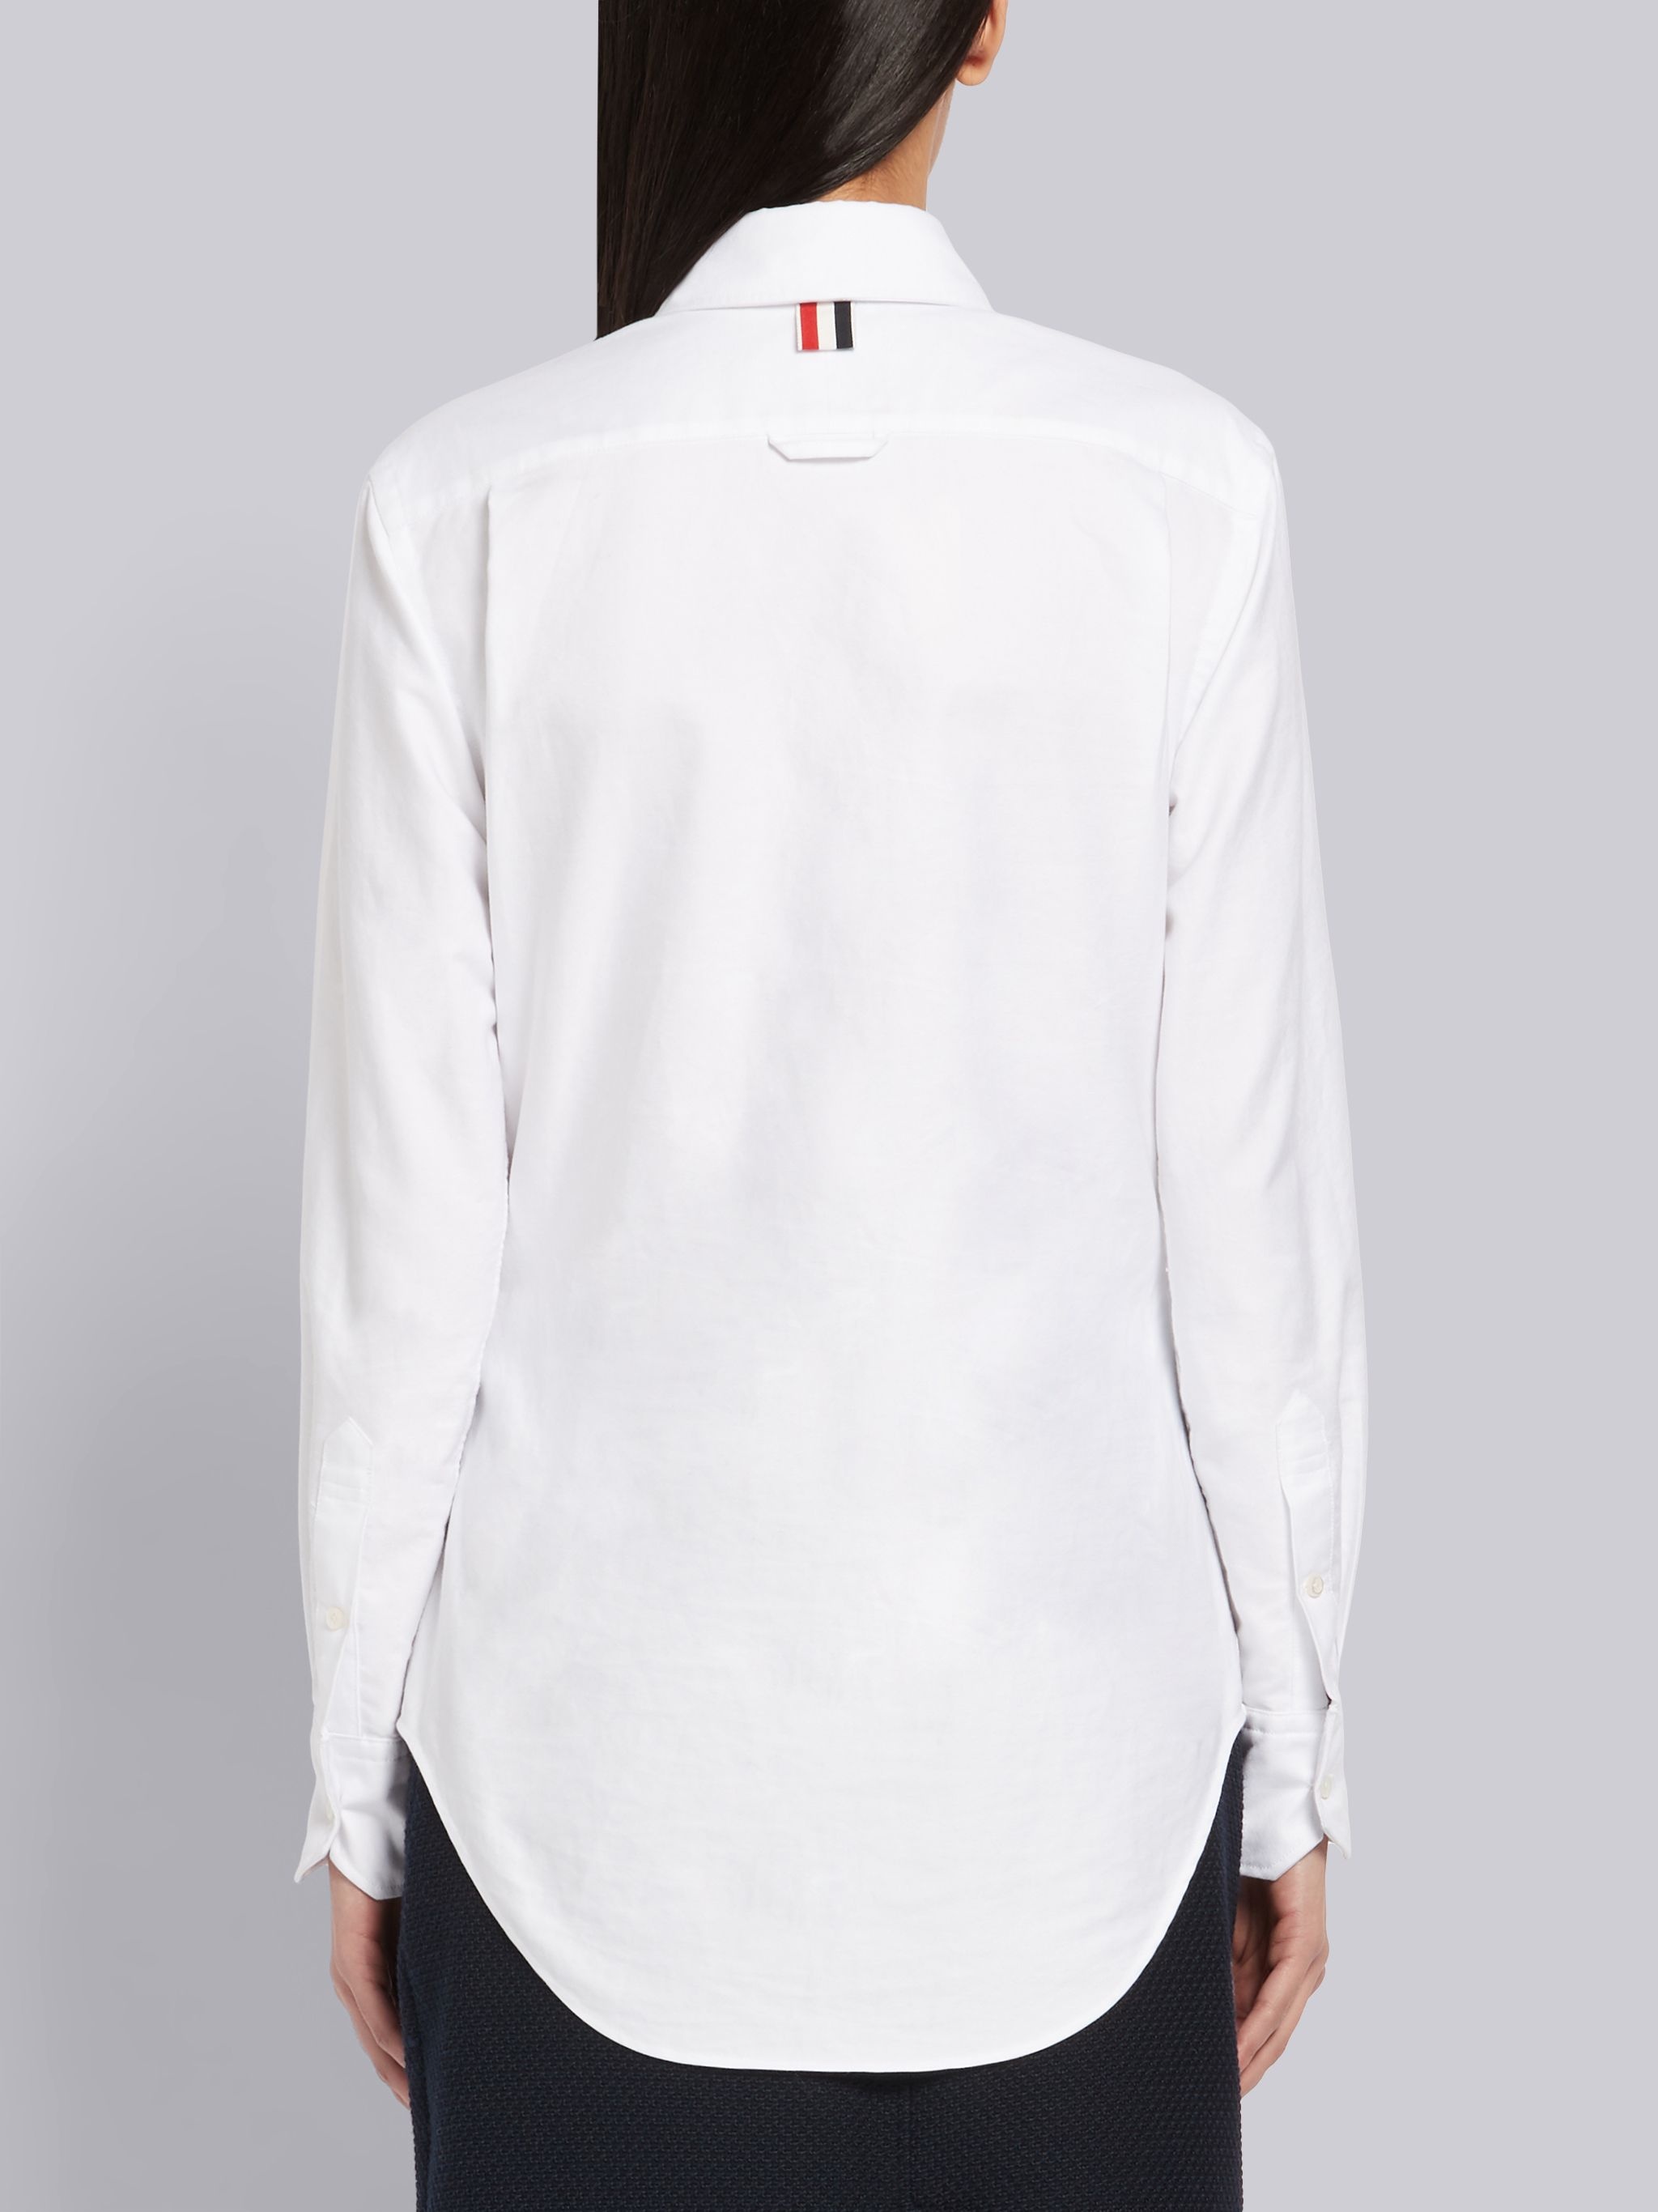 White Oxford RWB Tab Long Sleeve Shirt - 2